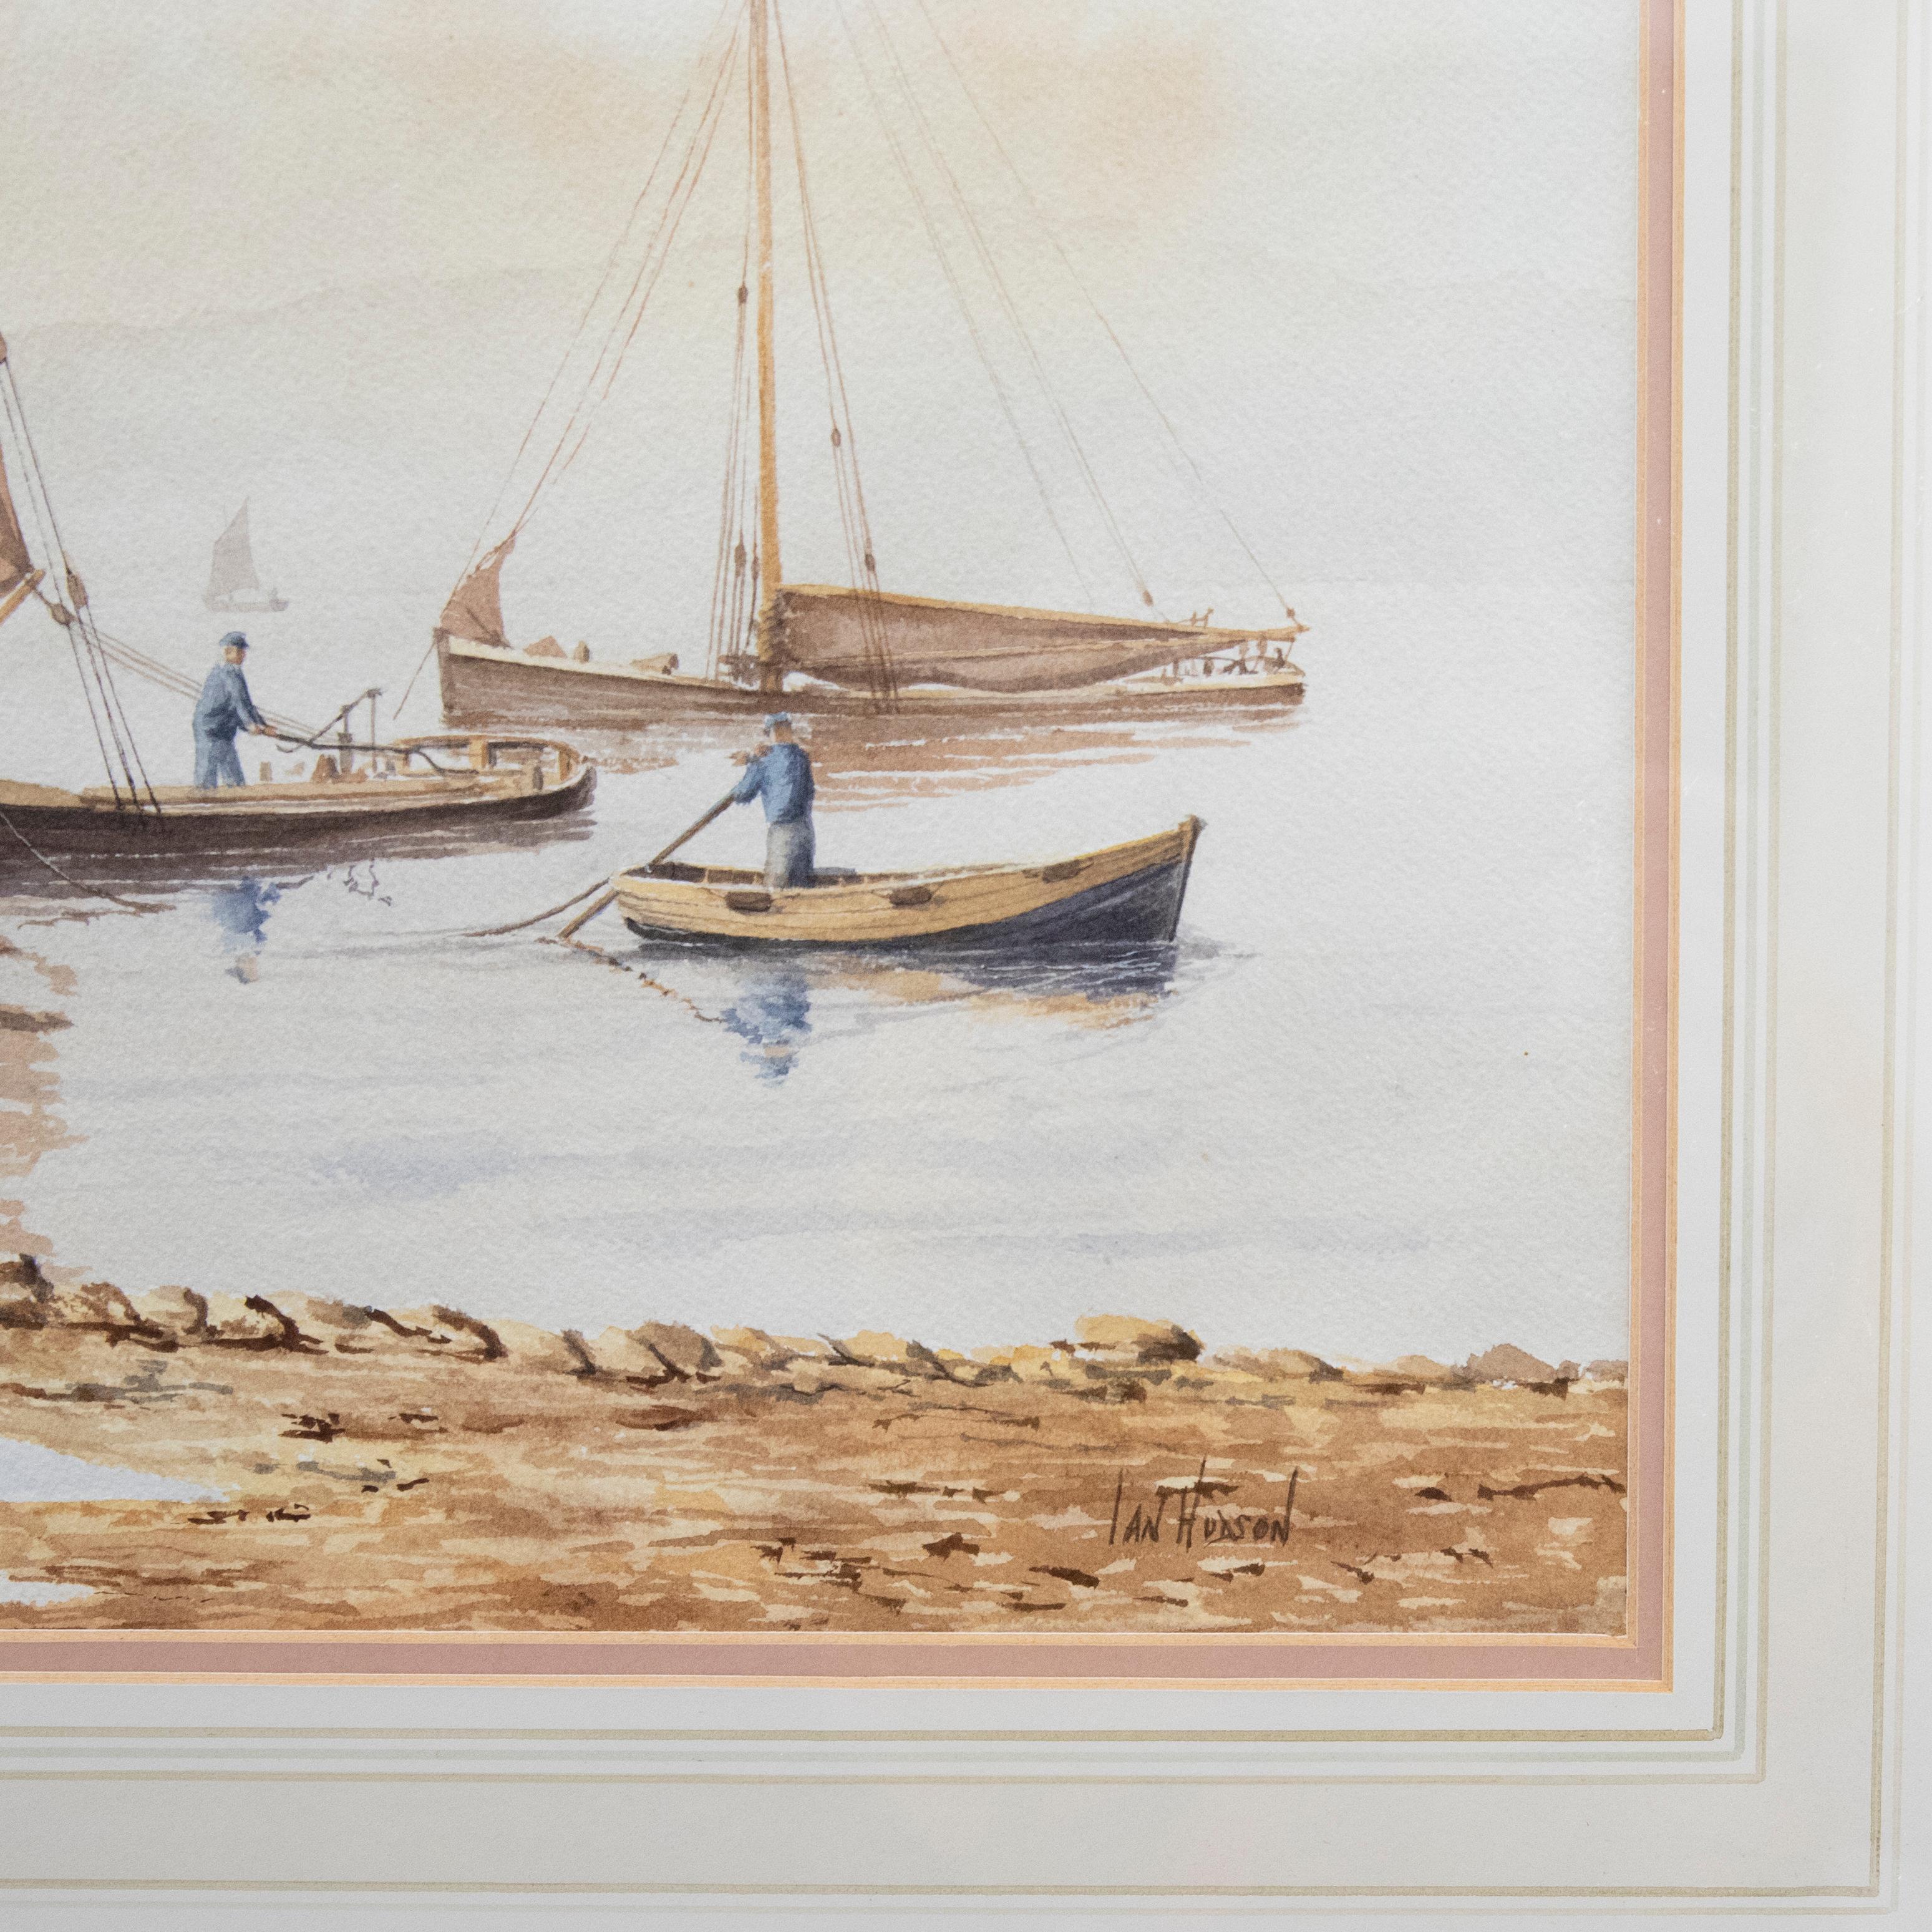 Eine charmante Aquarellstudie, die einen Fischer darstellt, der einem kleinen Jungen zeigt, wie er mit seinem Boot aufs Meer hinausfährt. Am unteren Rand signiert und betitelt. Präsentiert in einem vergoldeten Rahmen und einem Washline-Passepartout.